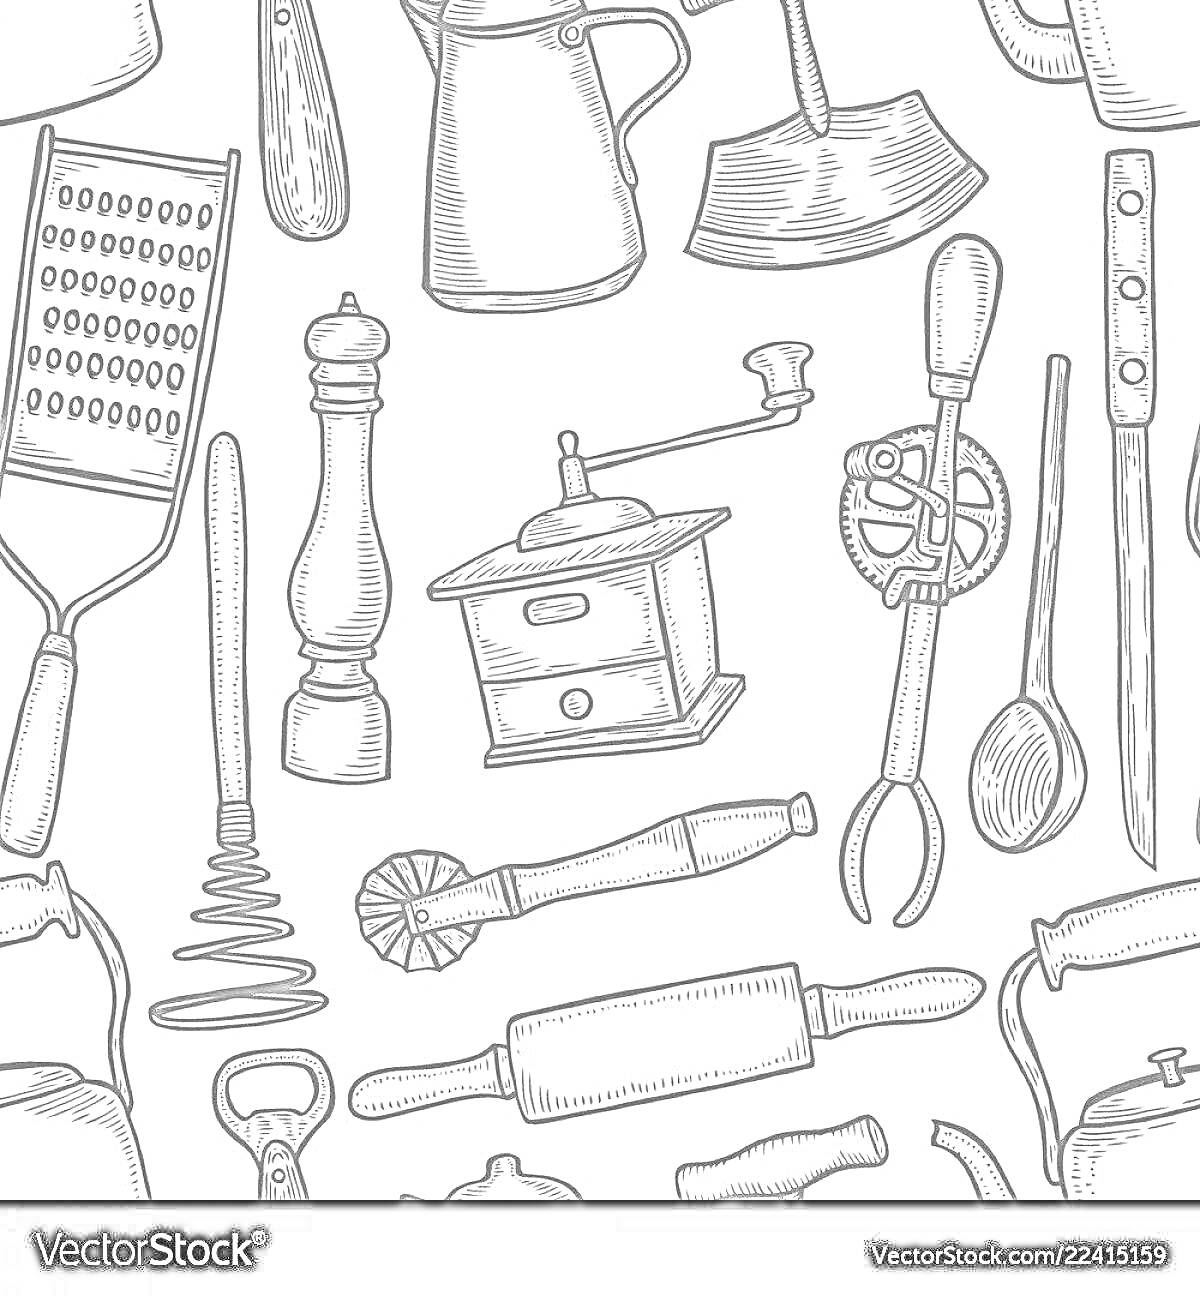 Раскраска Кухонные инструменты: терка, перечница, молочник, кофемолка, форма для выпечки, миксер для теста, венчик, скалка, нож, штопор, ложка, нож для теста, кренделевая машинка